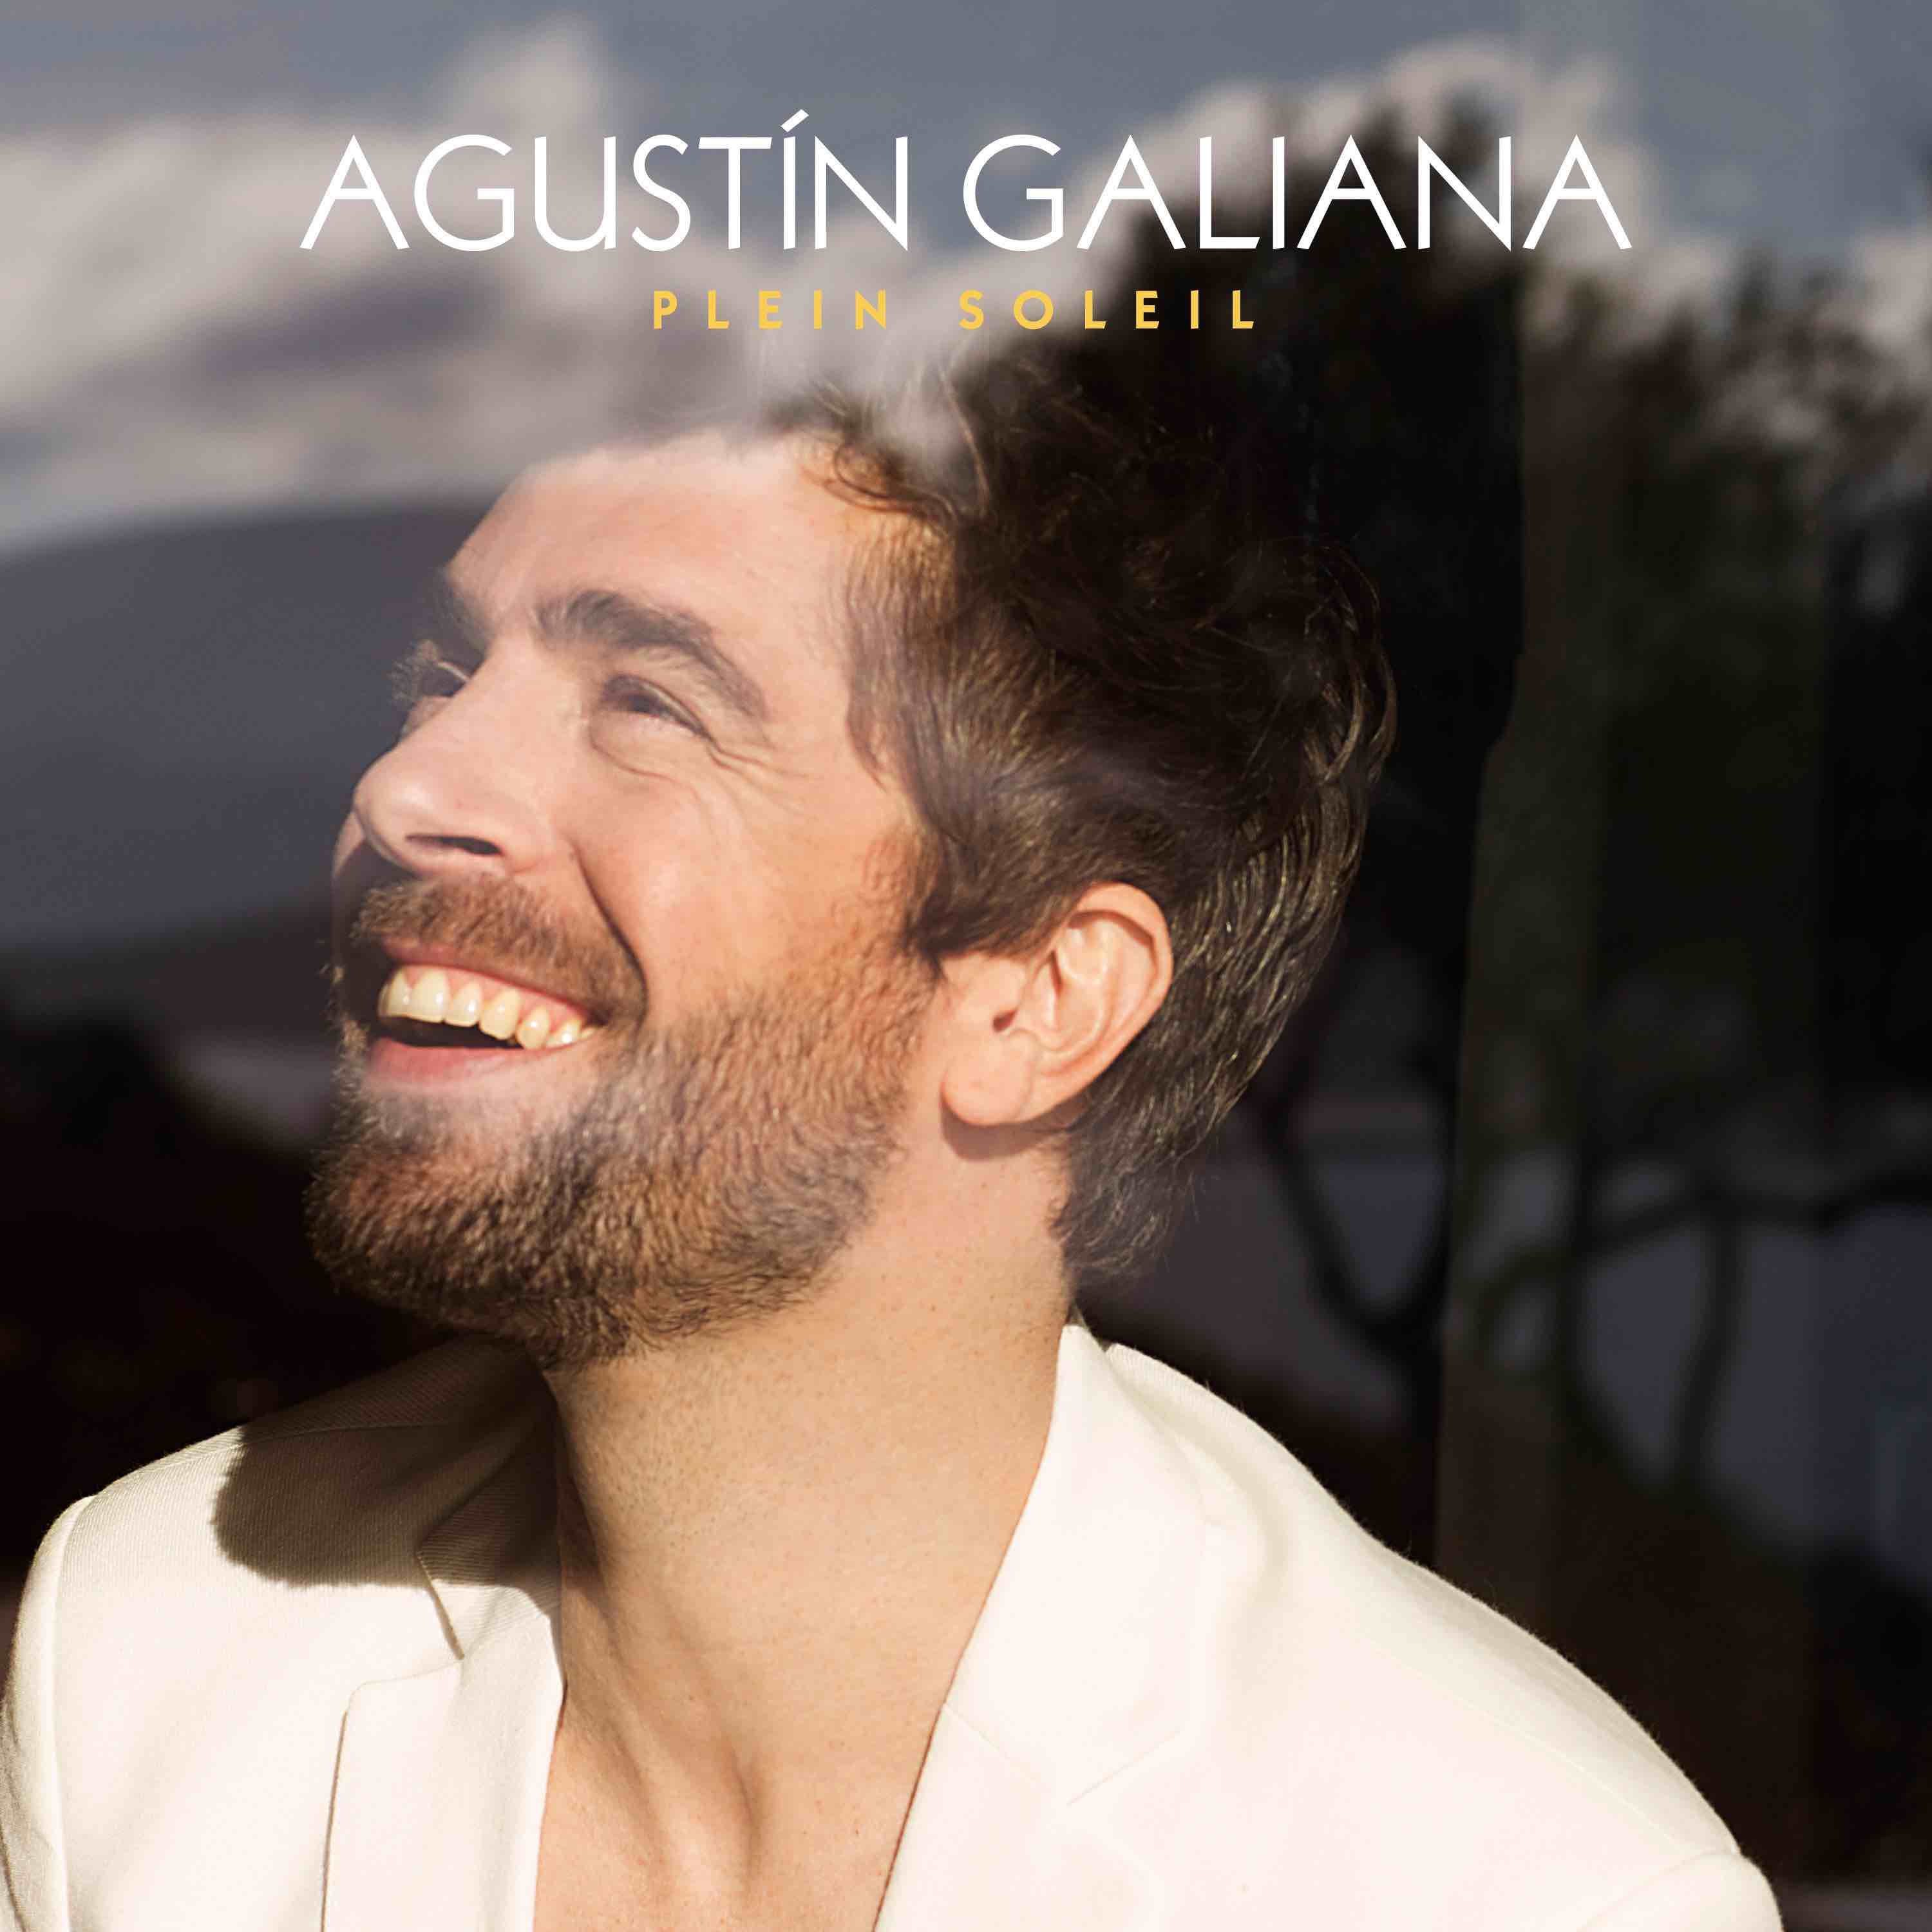 Agustin Galiana - Por que te vas - Plein soleil